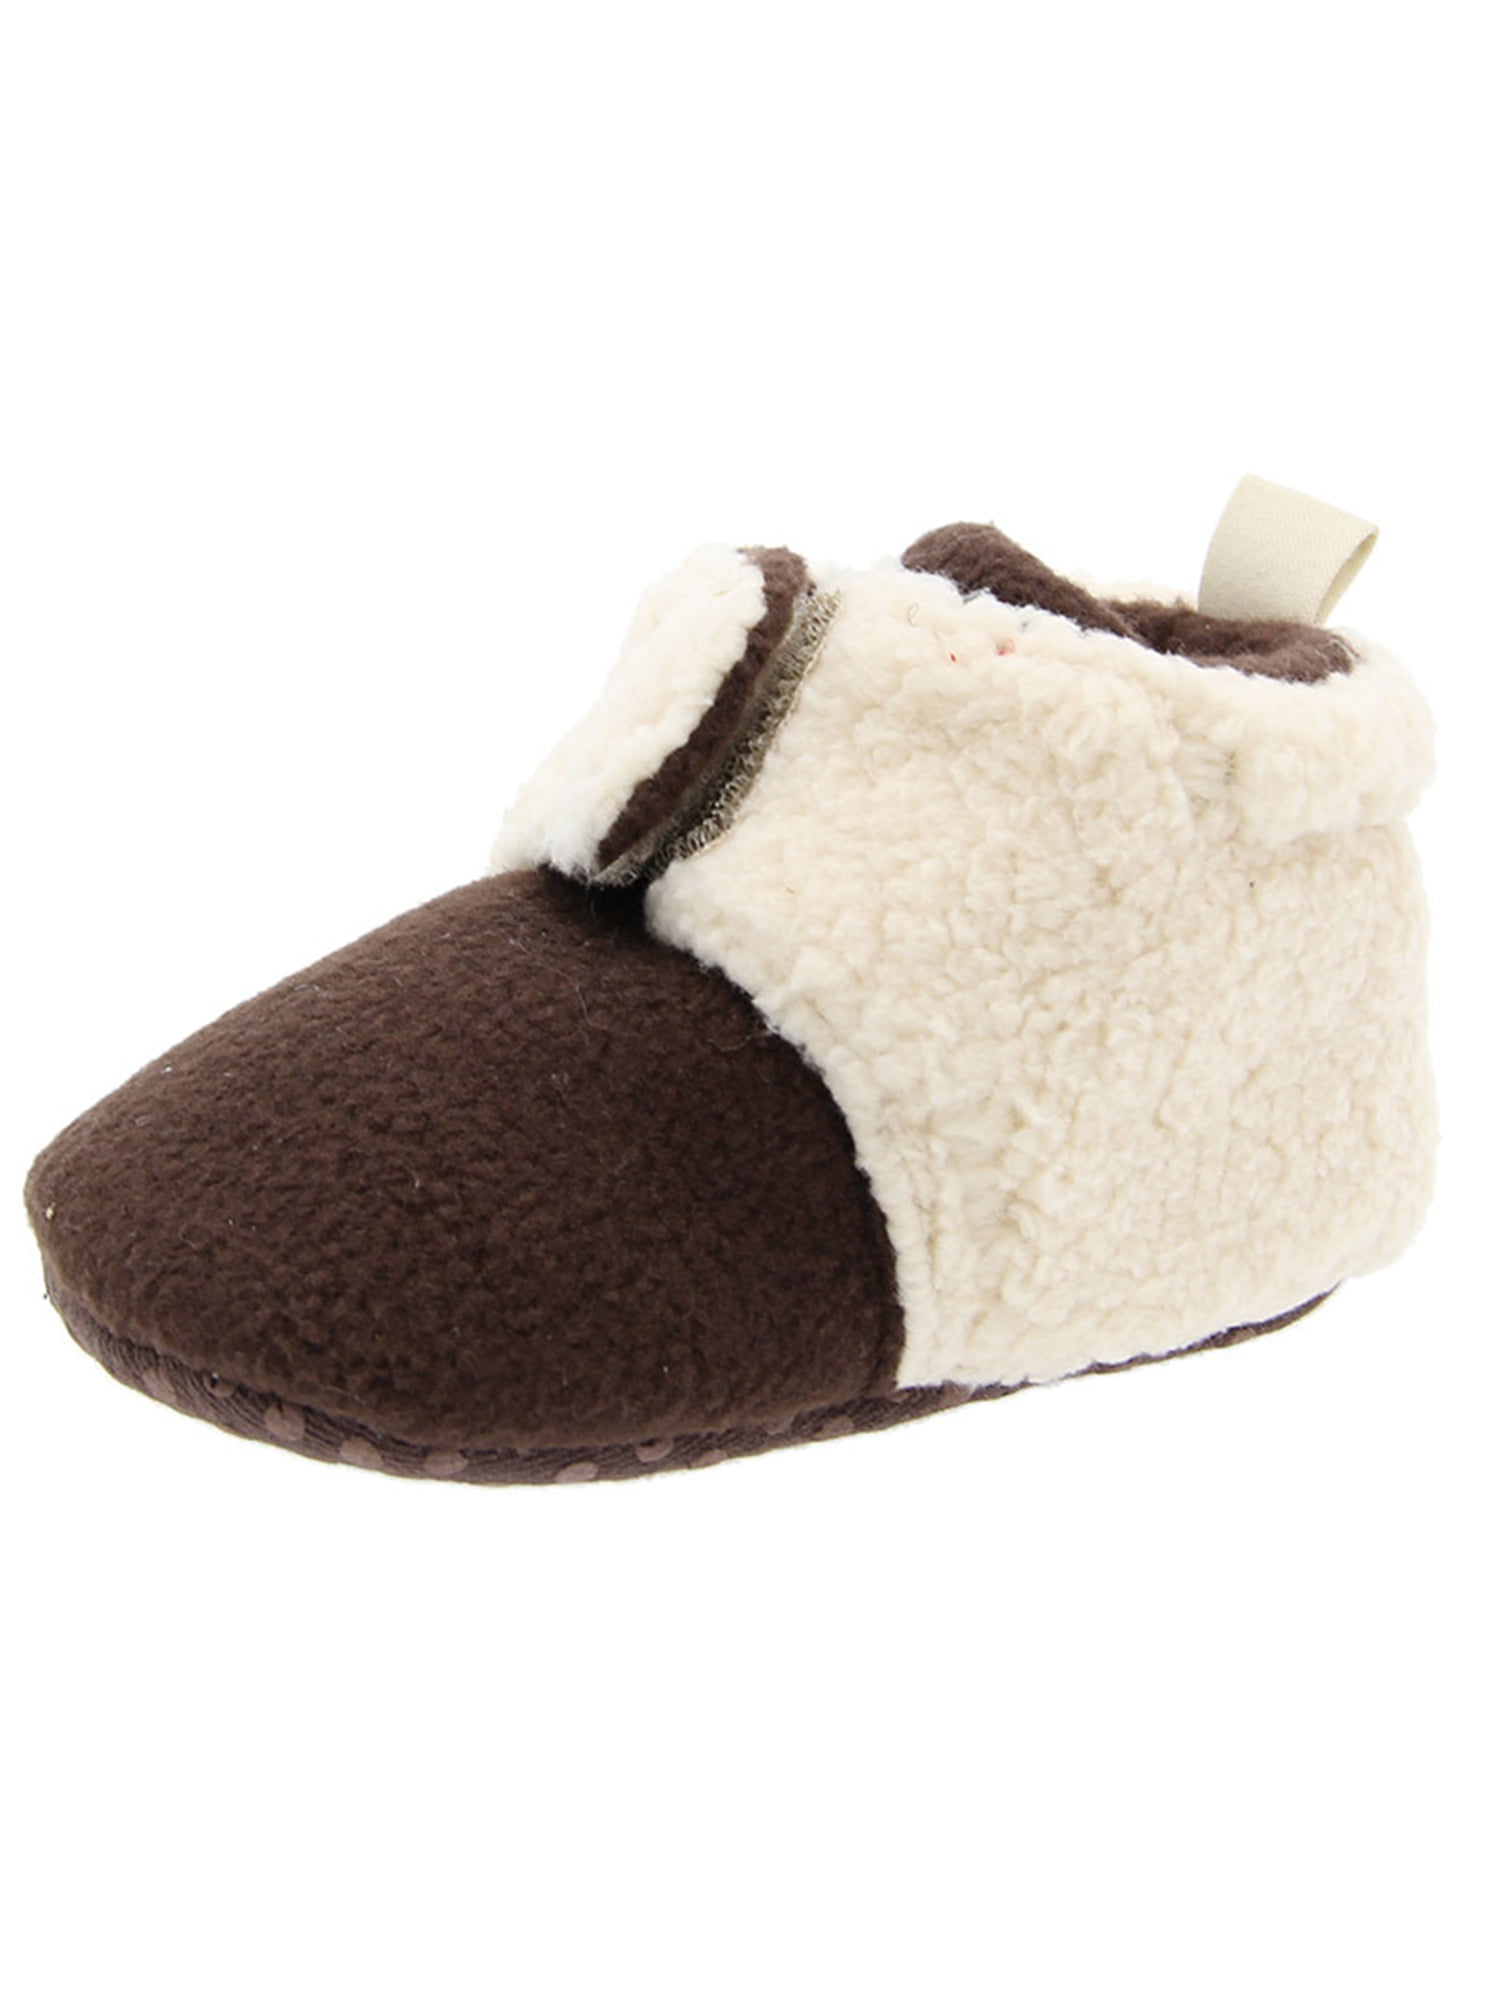 Baby Cozy Fleece Booties Premium Snow Boots Newborn Toddler Prewalker Winter Warm Crib Shoes 